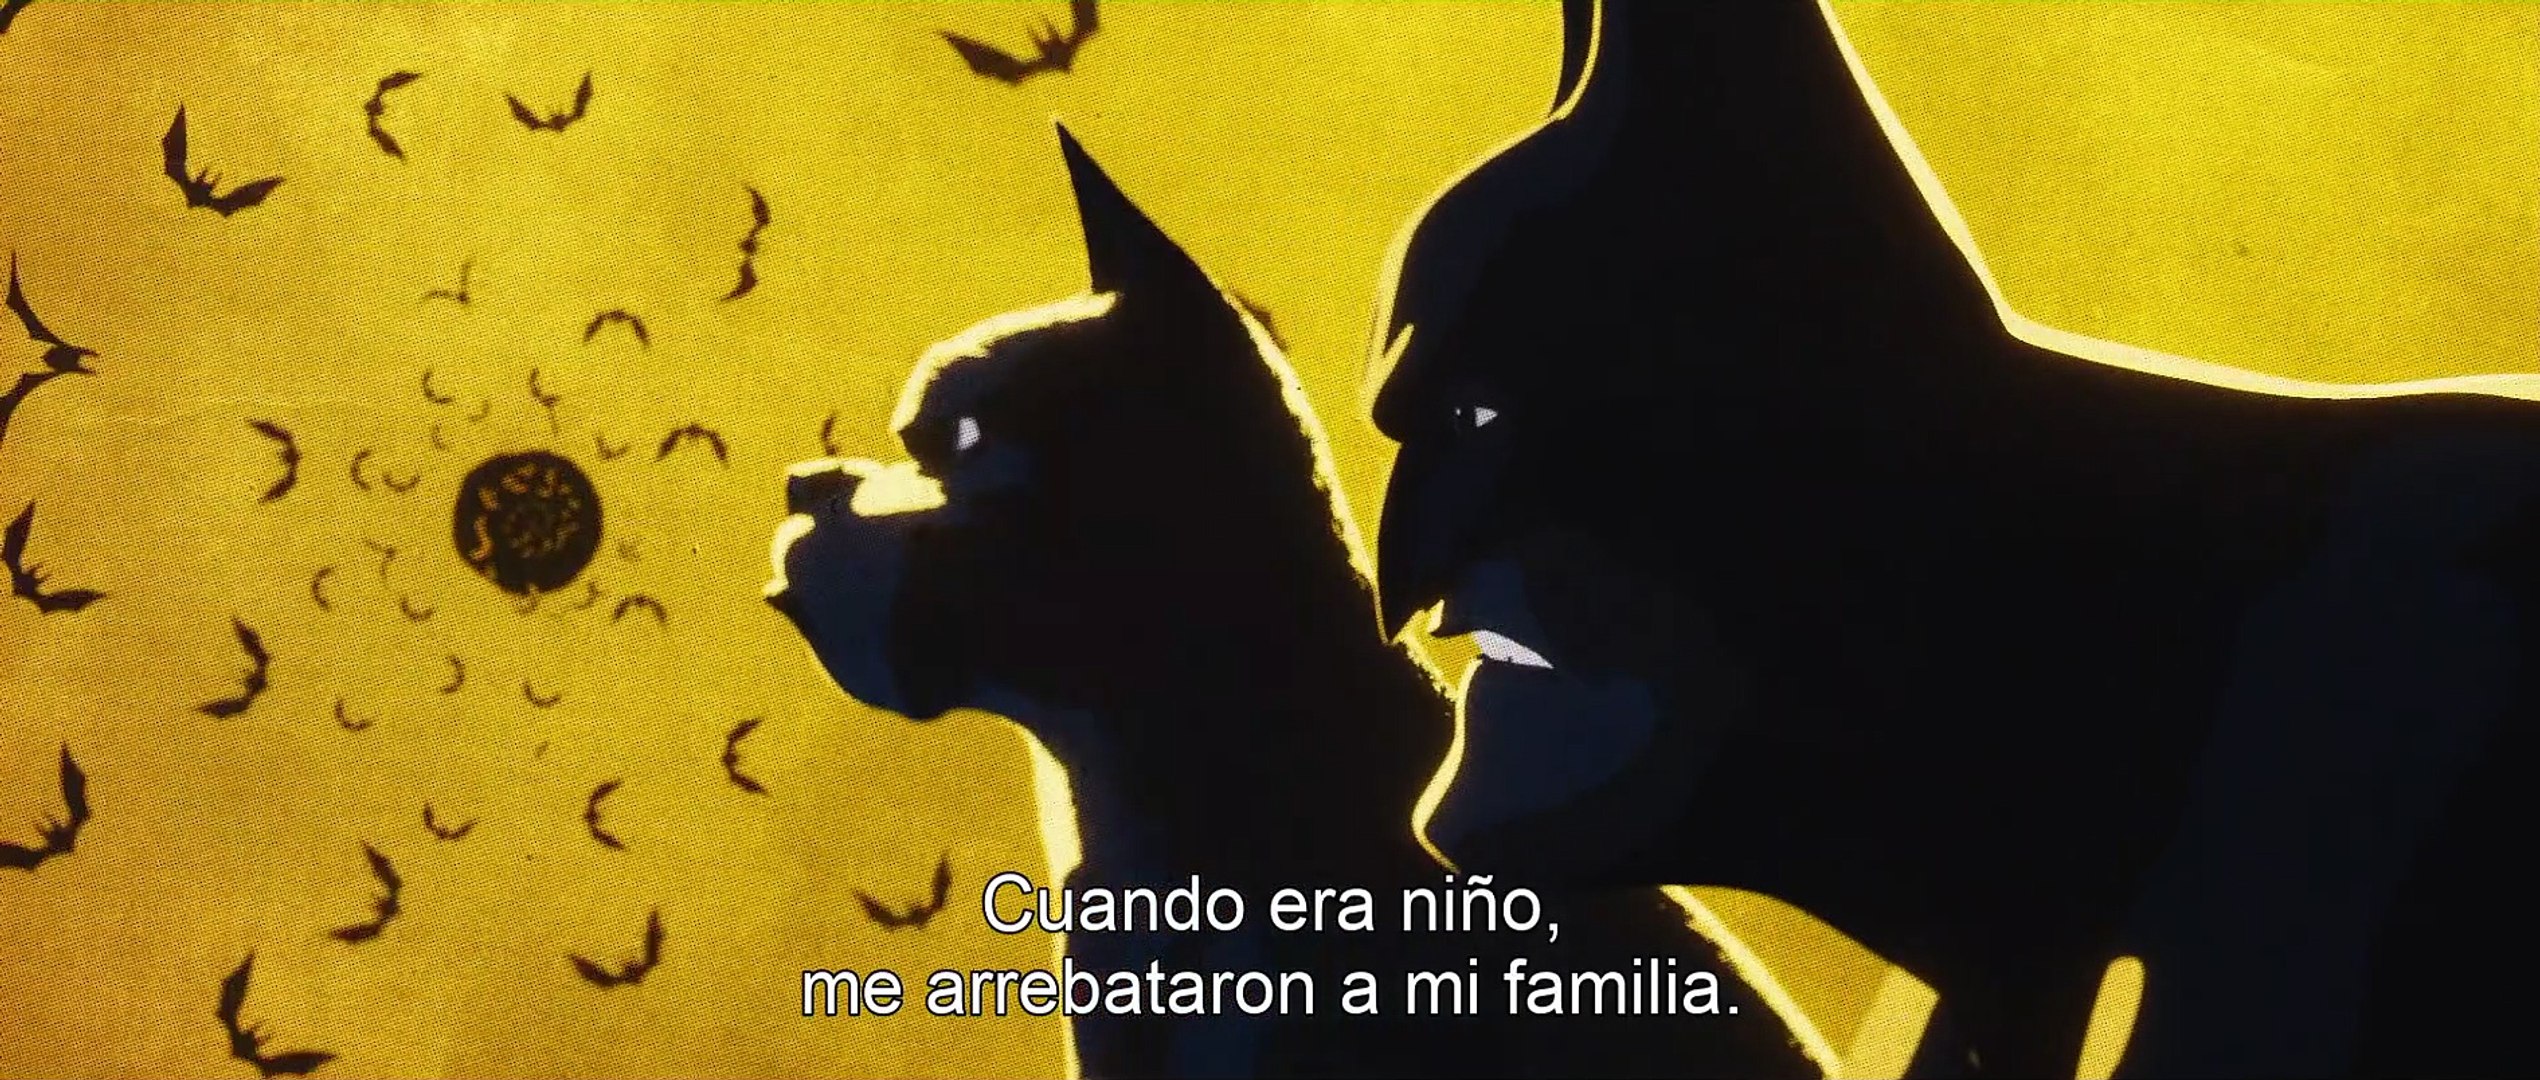 DC Liga de Súper-Mascotas - Trailer español latino - Vídeo Dailymotion